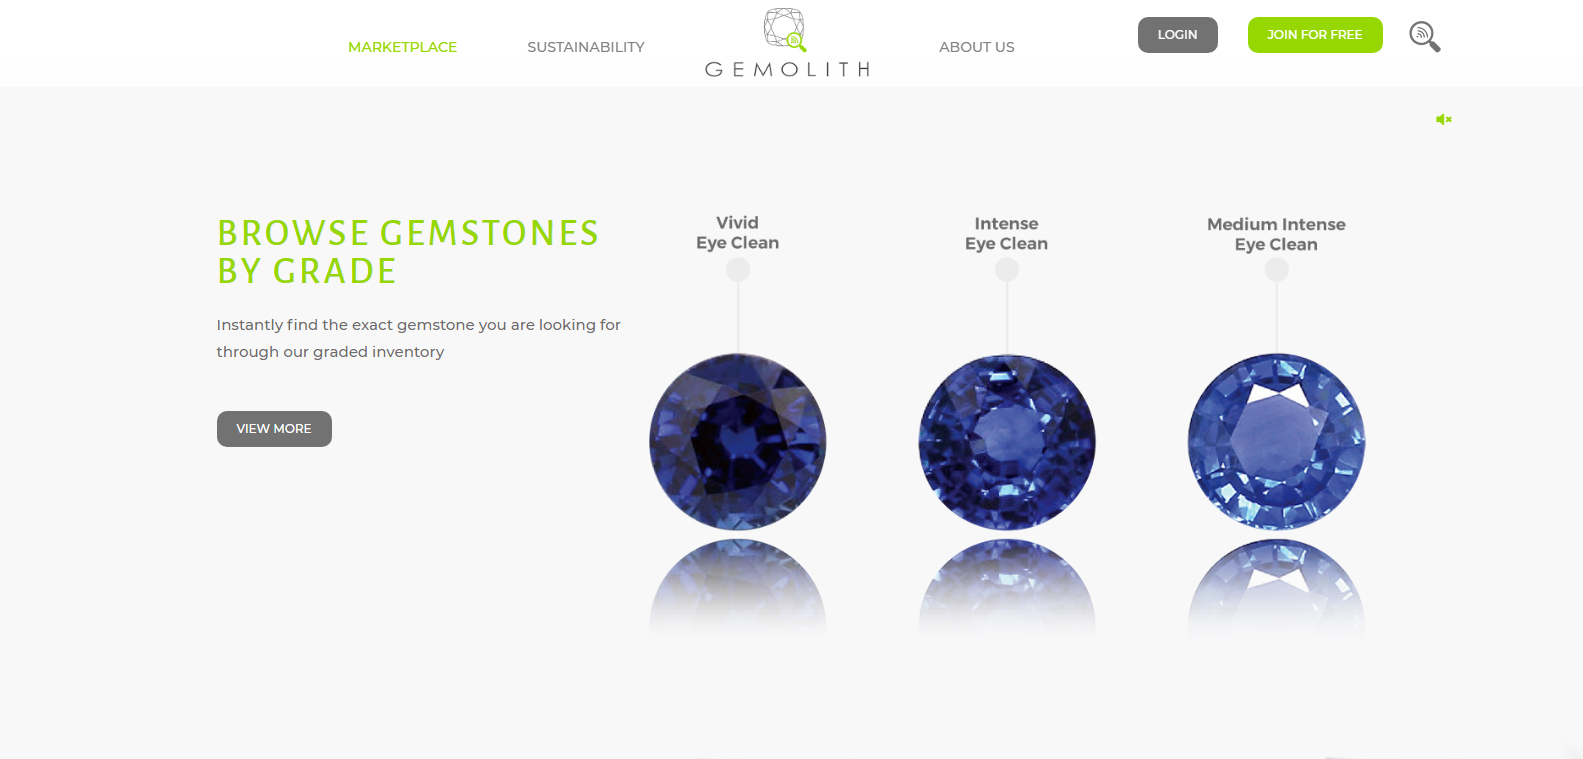 Если вы еще не заходили на сайт Gemolith.com, обязательно посетите его и ознакомьтесь с подборкой драгоценных камней